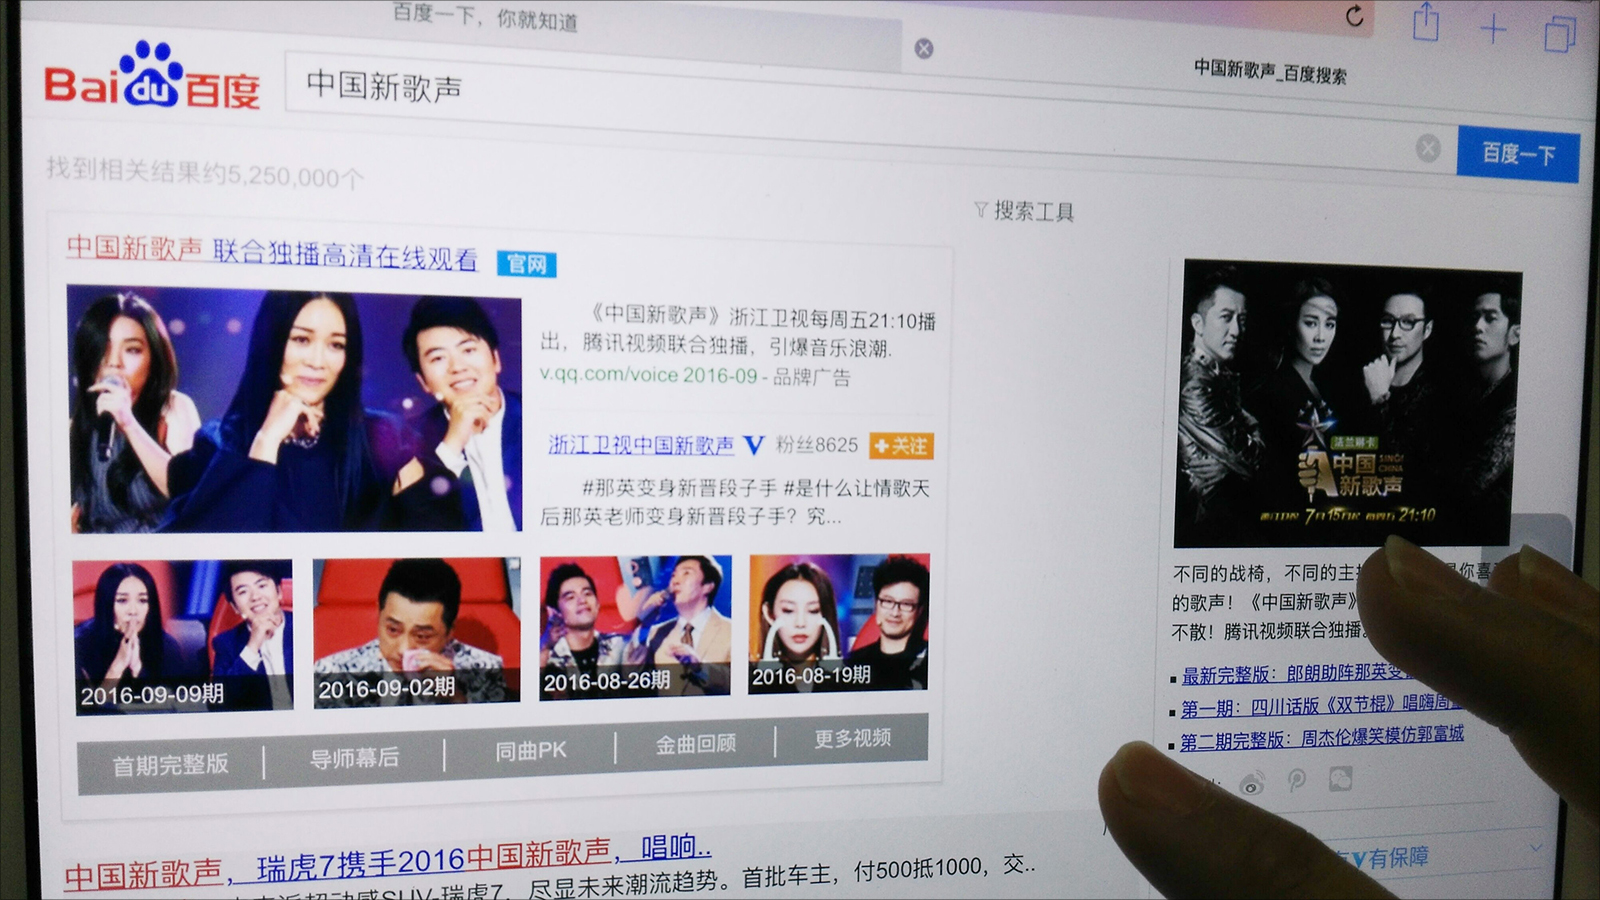 ‪البحث عن أخبار الفنانين الصينيين في محرك البحث الشهير بايدو‬  (الجزيرة)